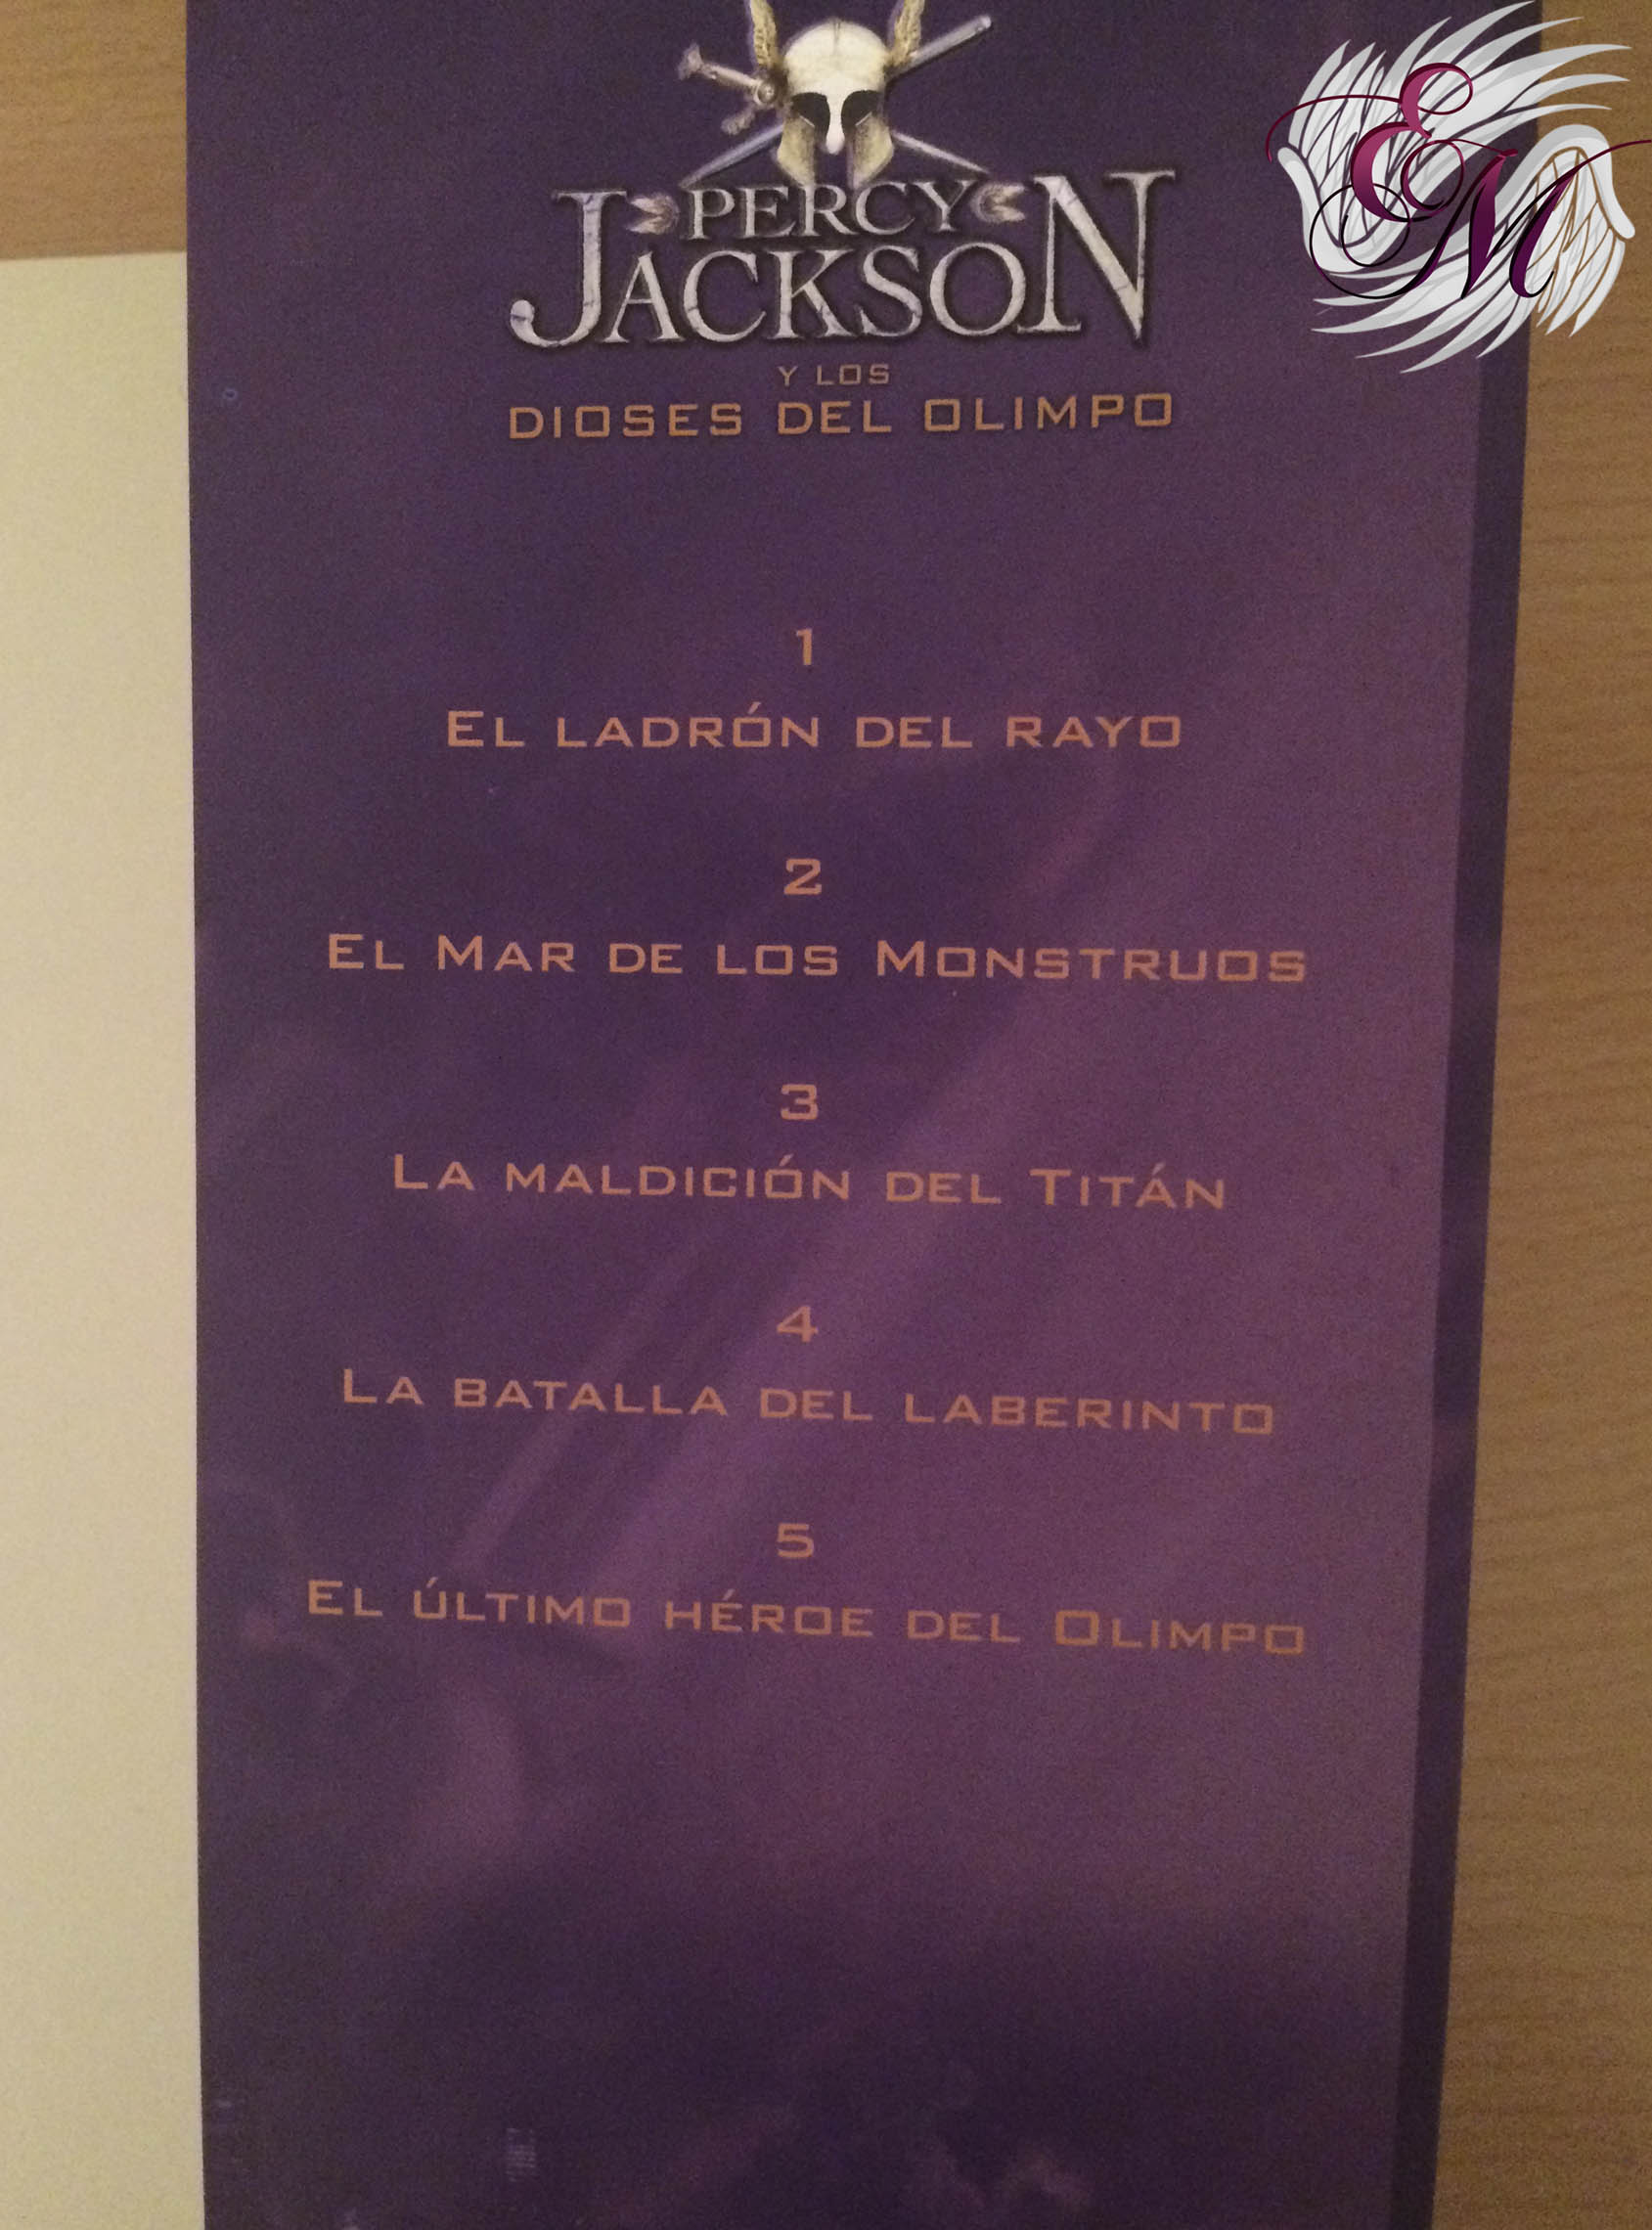 Percy Jackson y la maldición del Titán, de Rick Riordan - Reseña